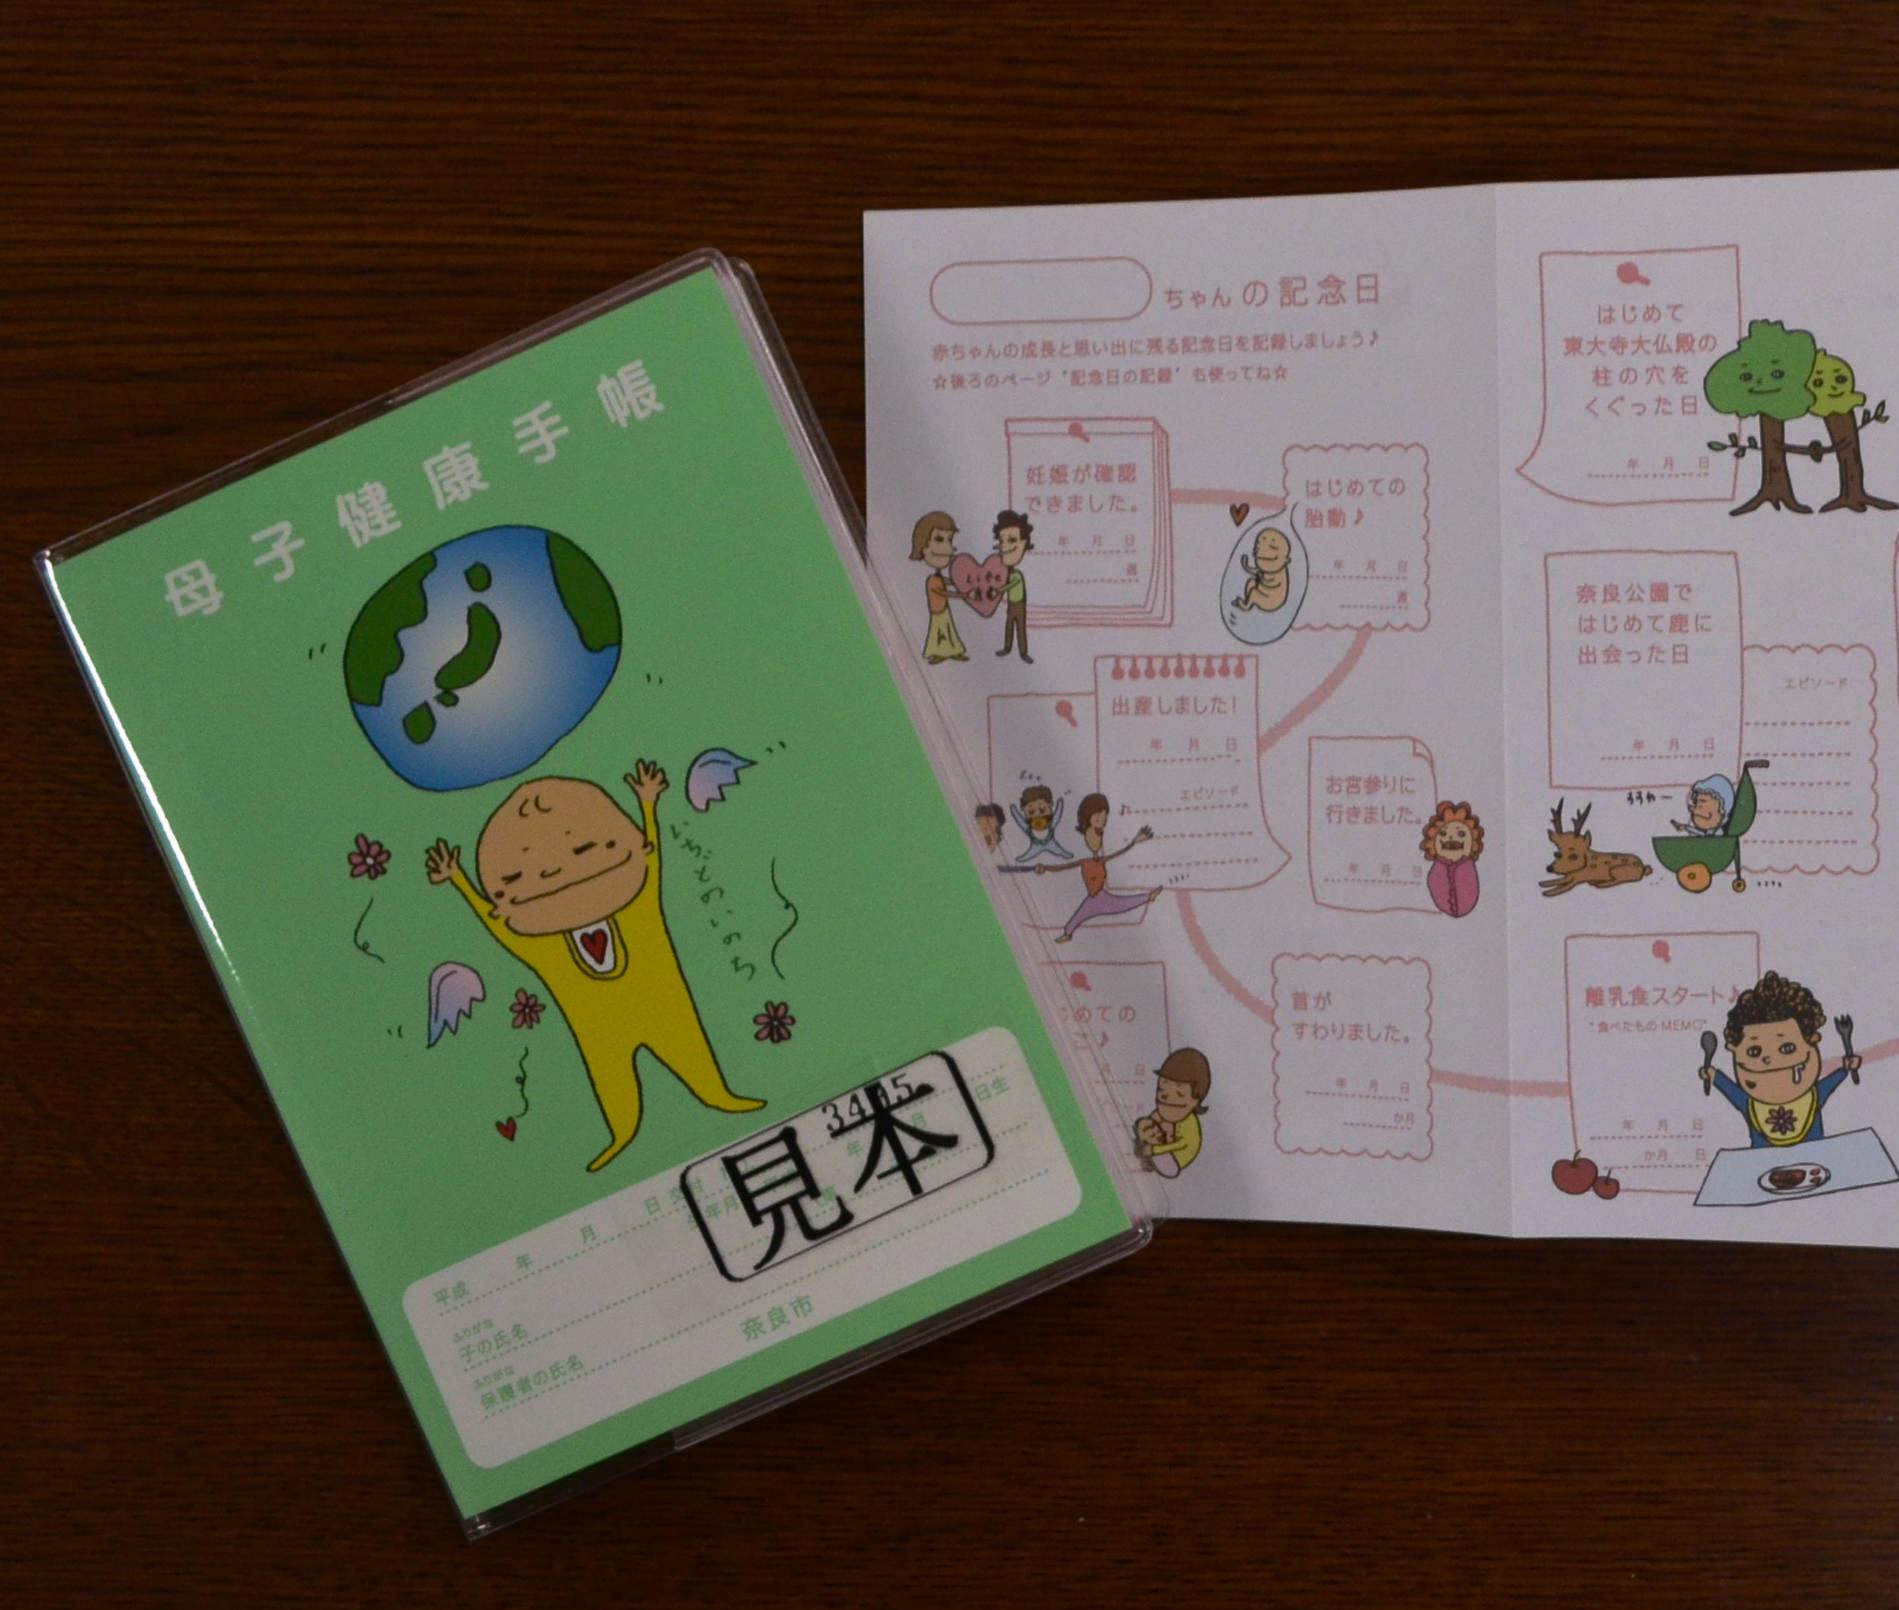 朝日新聞奈良総局 奈良市出身のタレント 堂本剛さんが描いたイラストが表紙に使われた母子健康手帳が４月から奈良市で交付されます ｙ Http T Co 9xidtmqoo7 Twitter